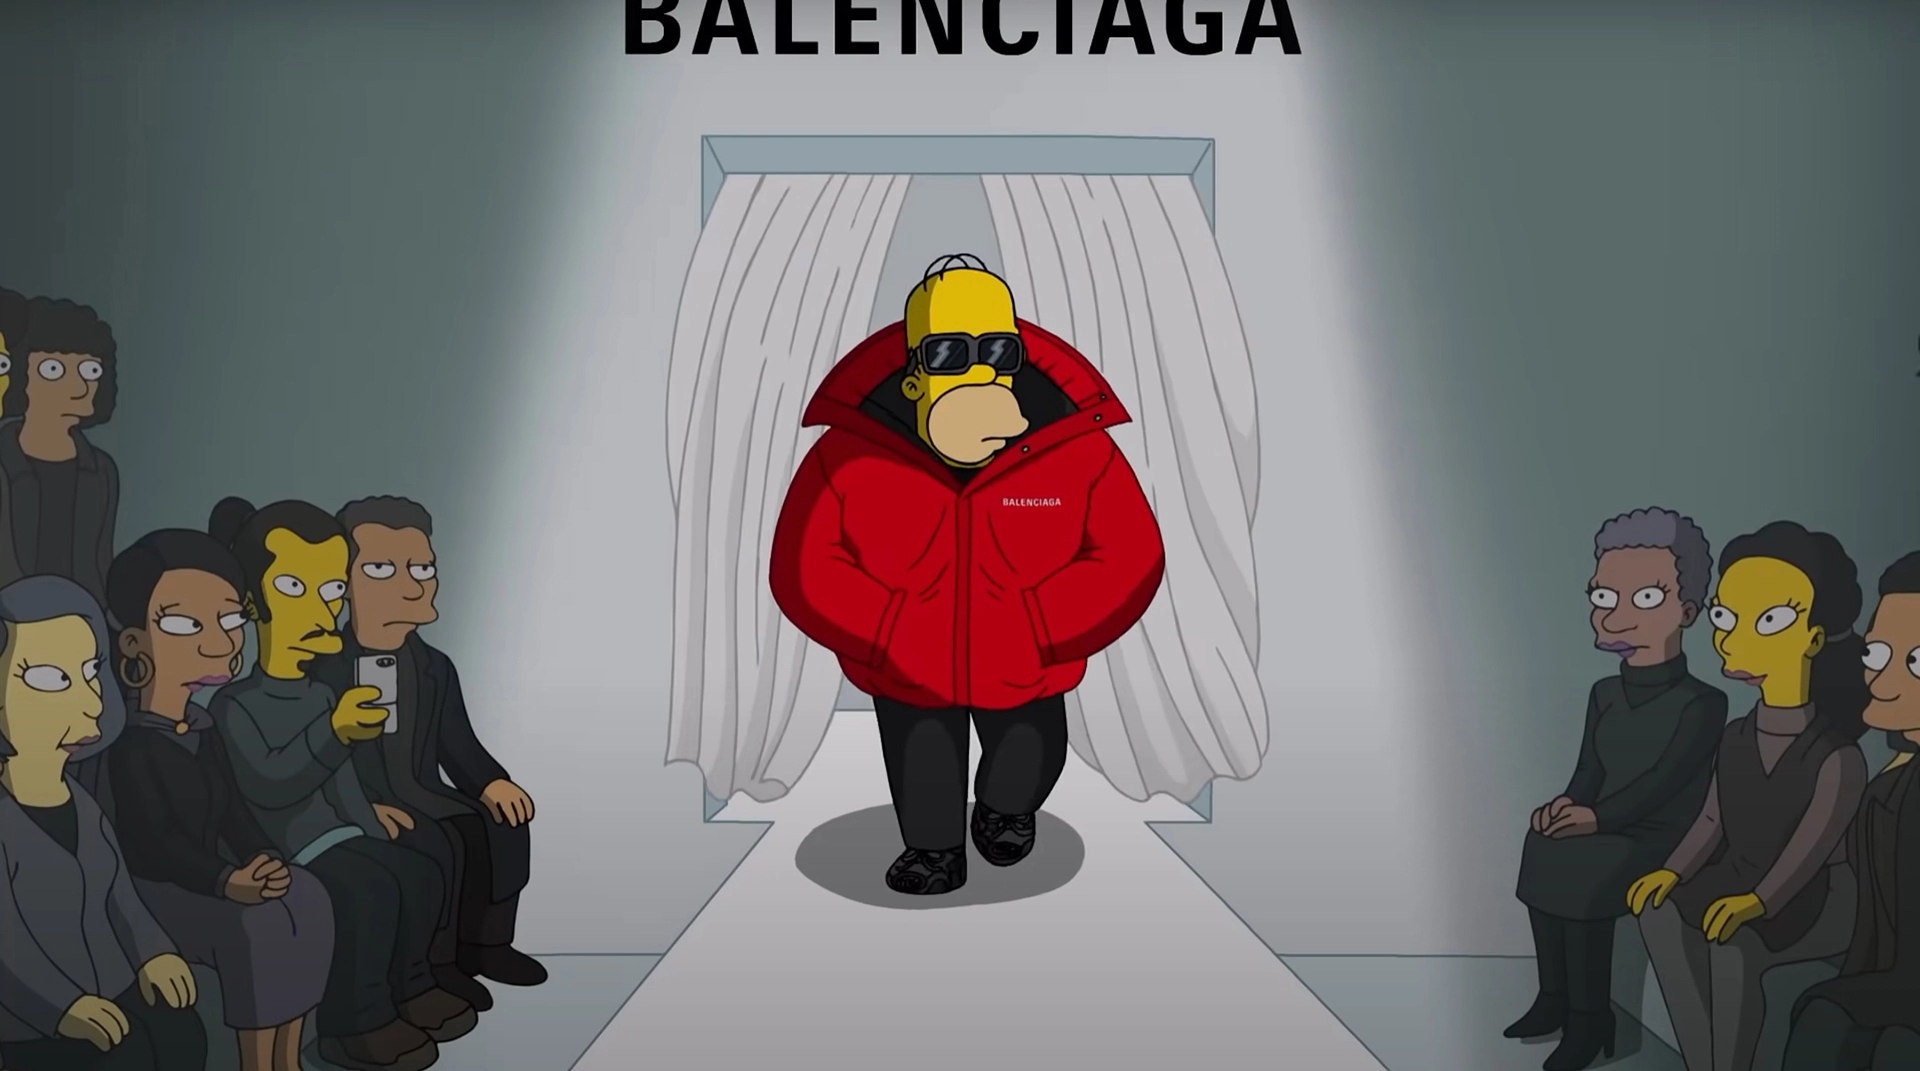 Симпсоны грустно пошутили над СССР в специальном коммерческом эпизоде для Balenciaga